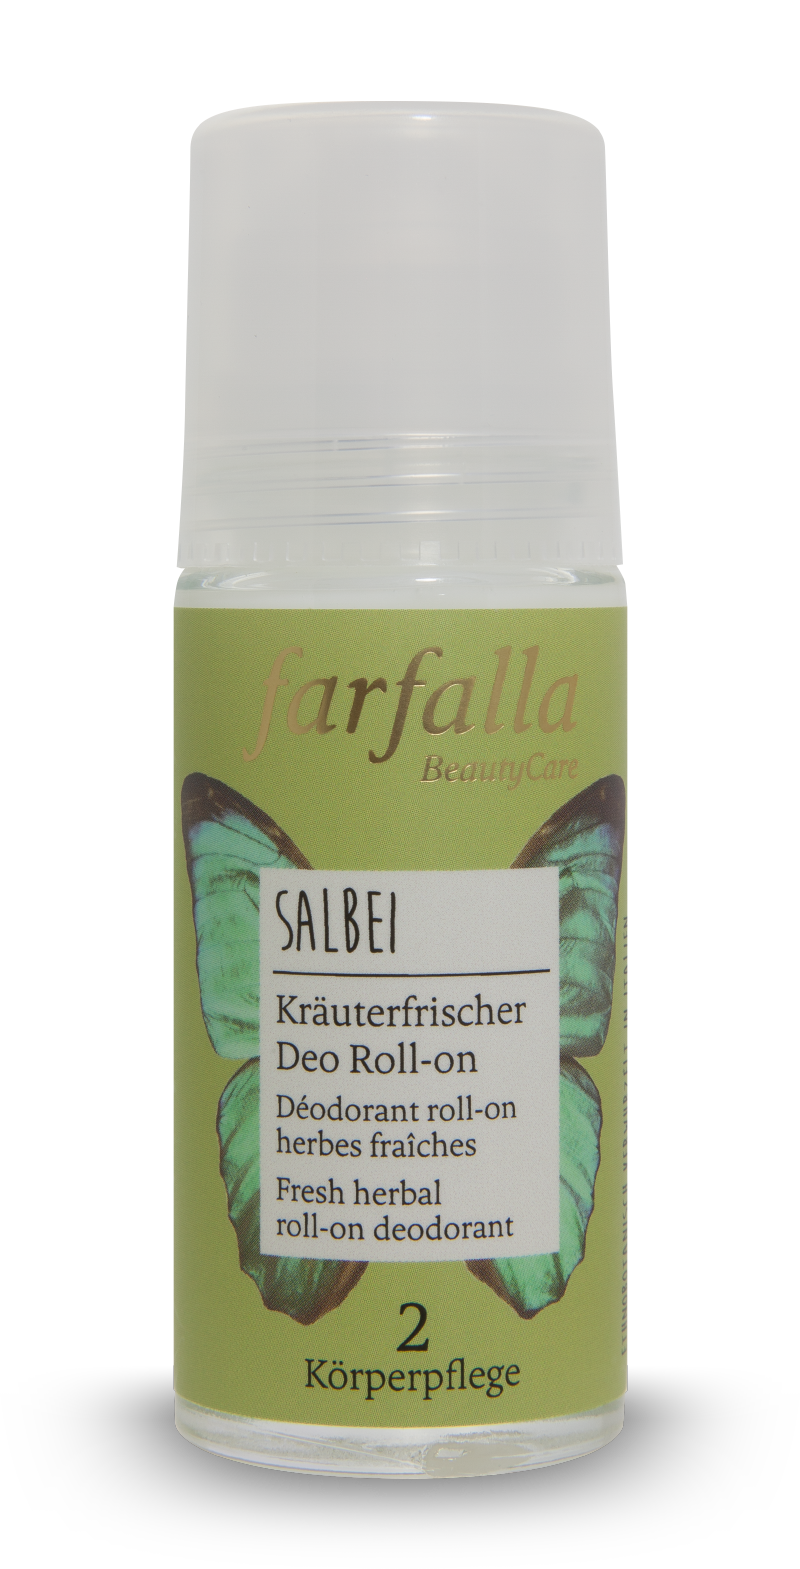 Farfalla Salbei Kräuterfrischer Deo Roll-on 50ml